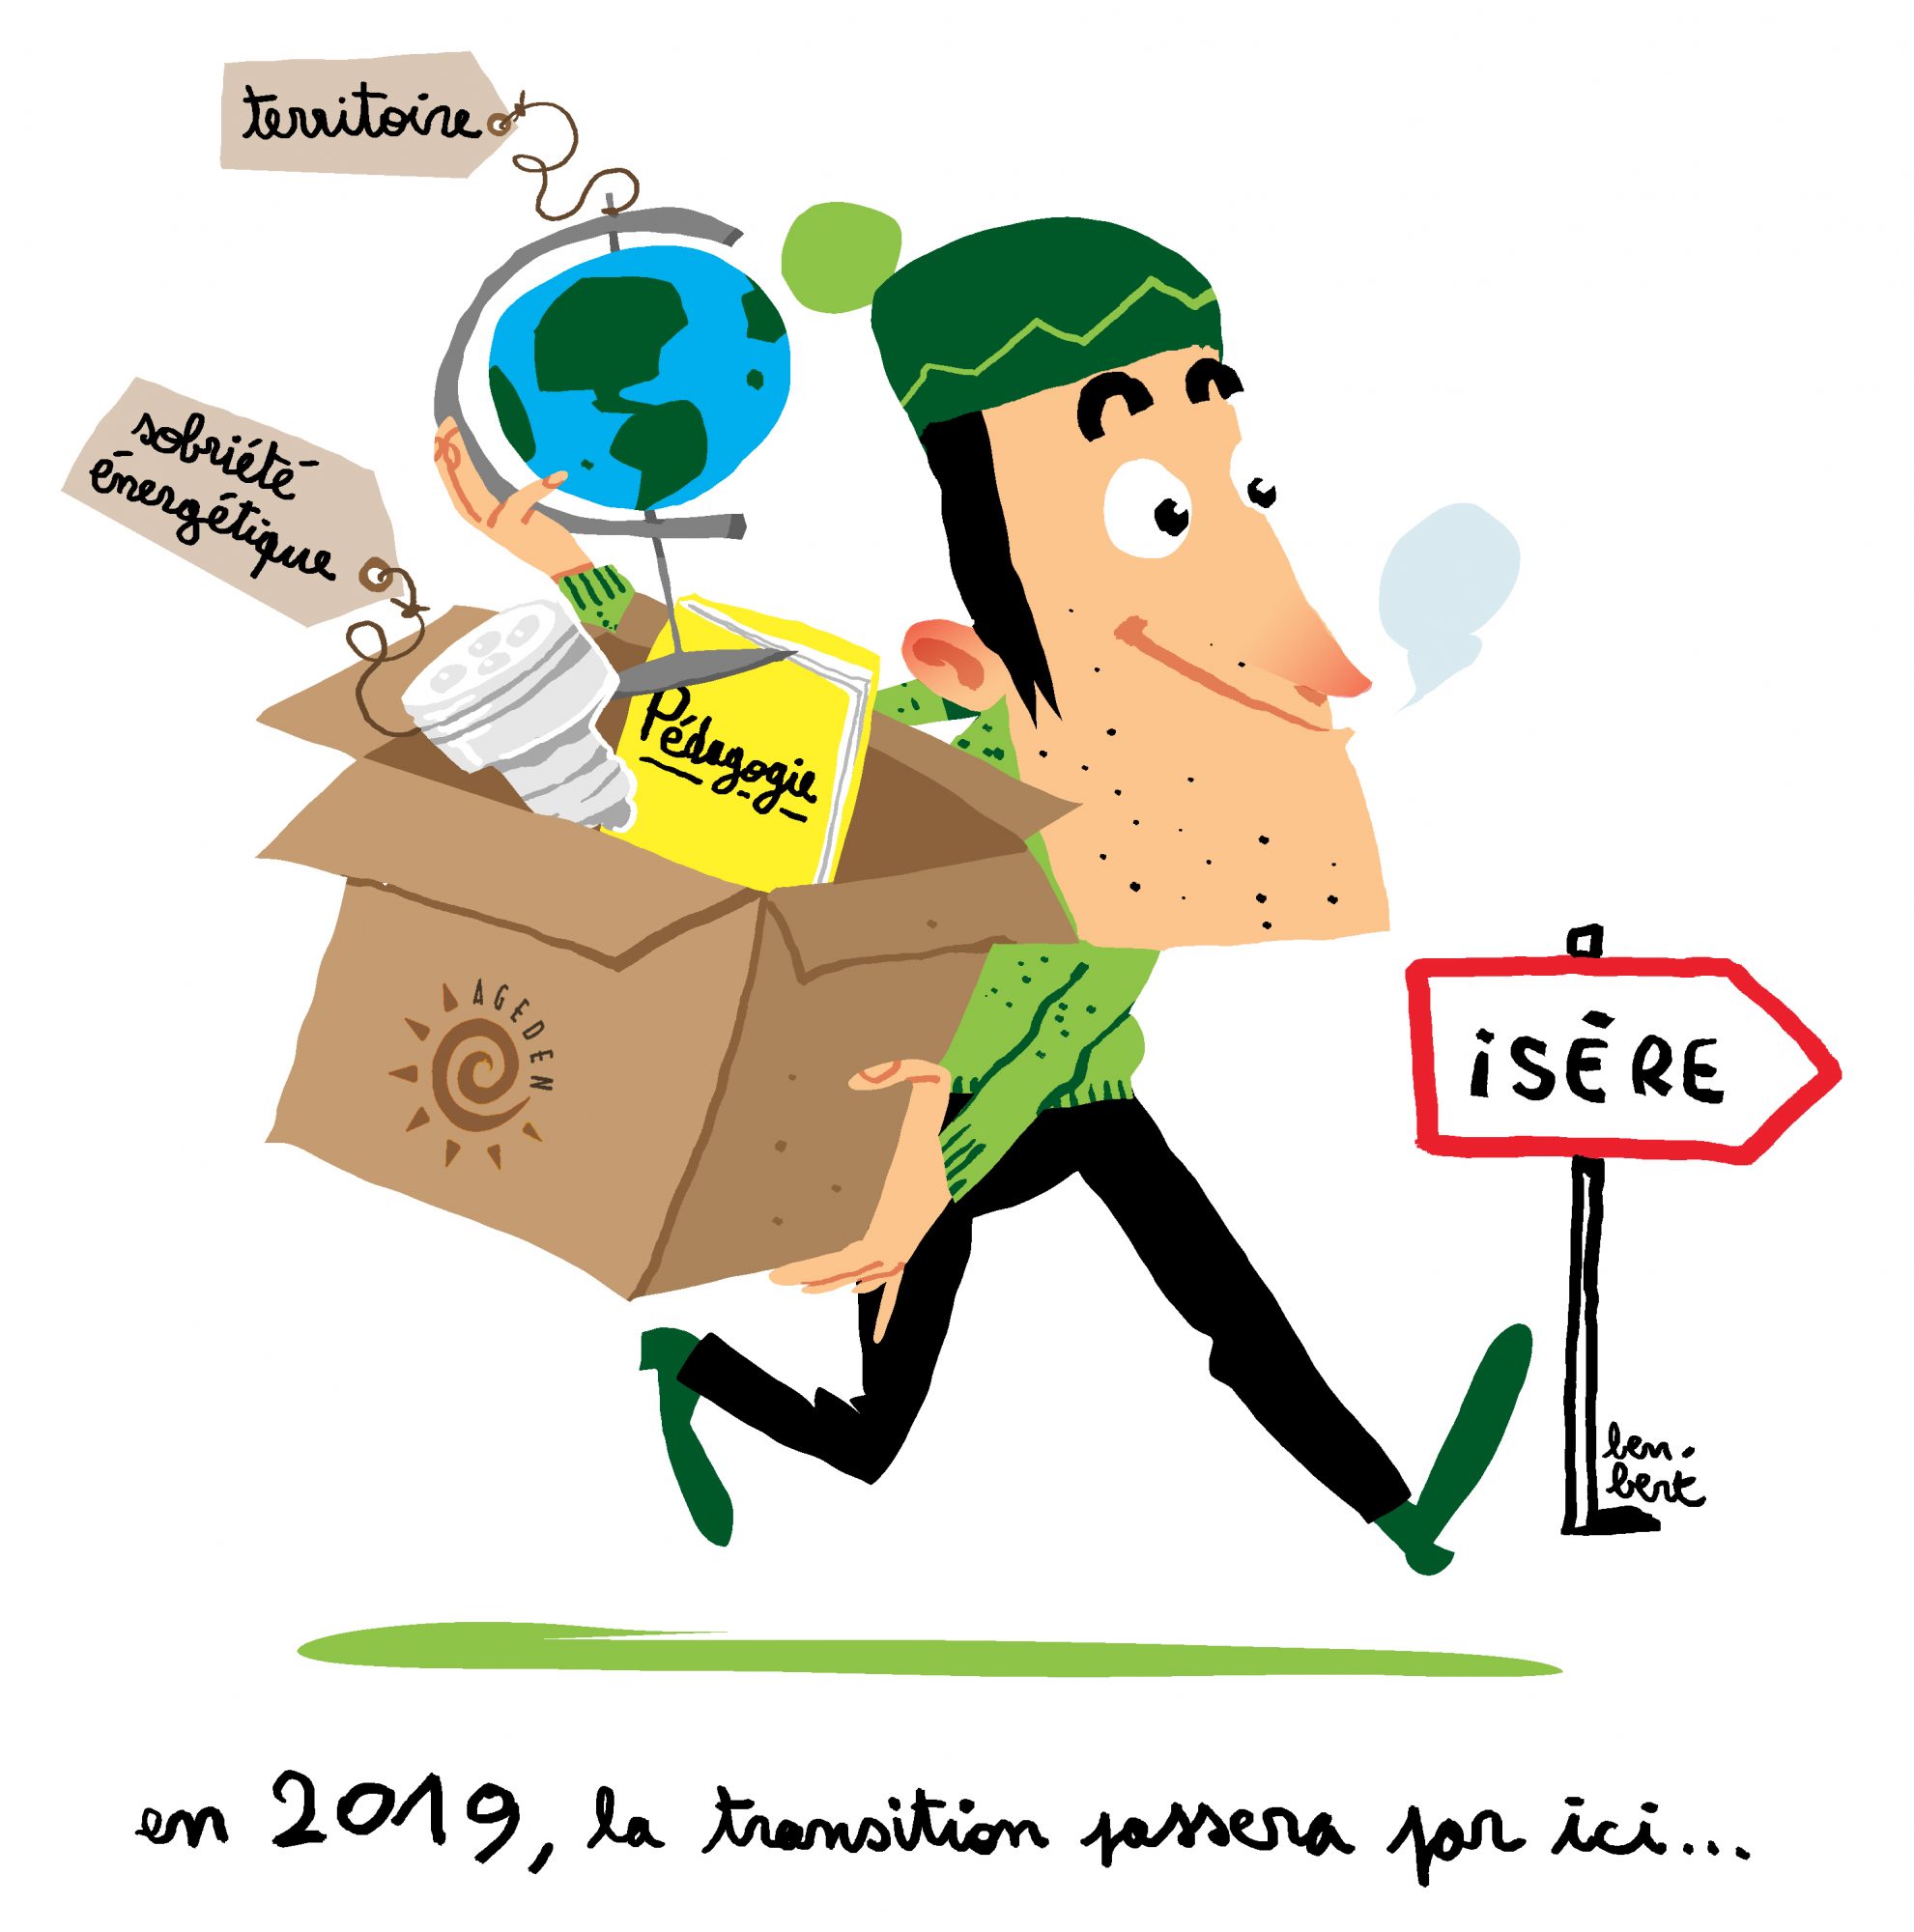 En 2019, la transition passera en Isère – Meilleurs vœux